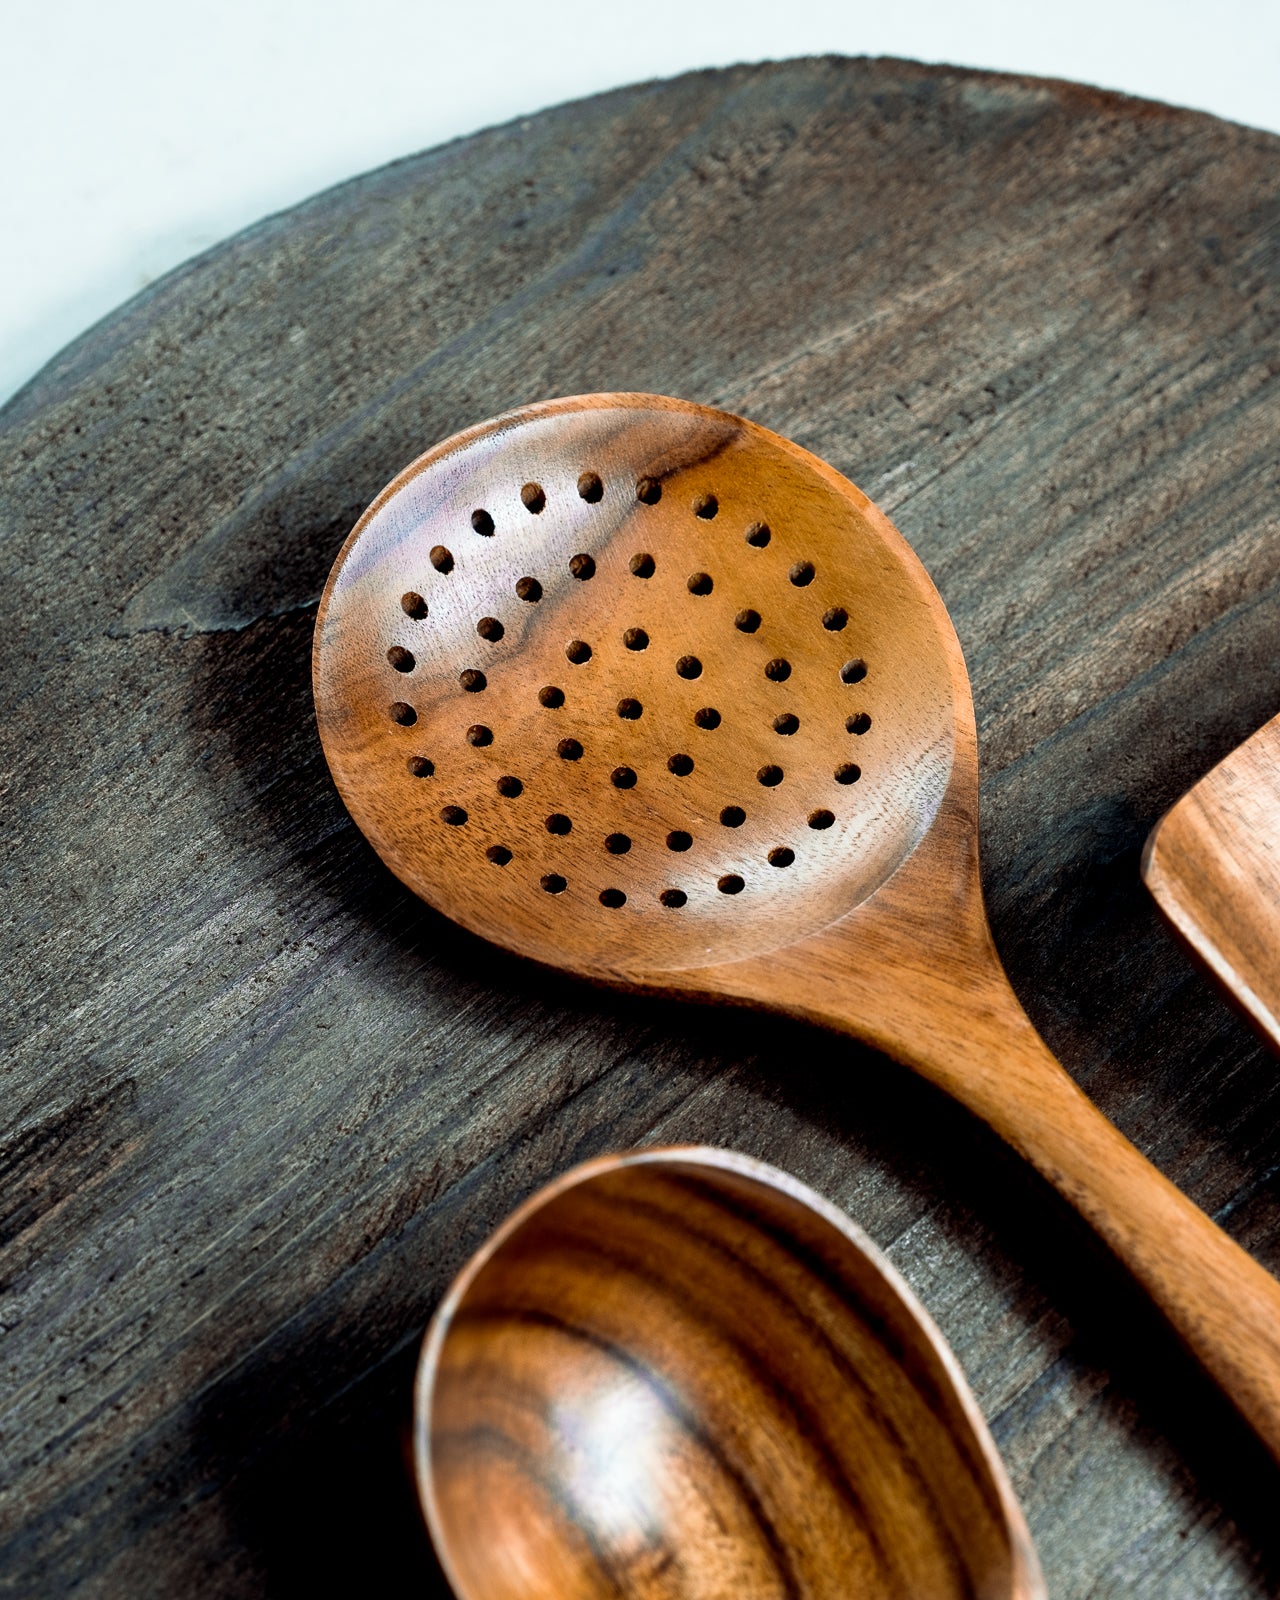 Teakwood Kitchen Utensils - Perforated Ladle